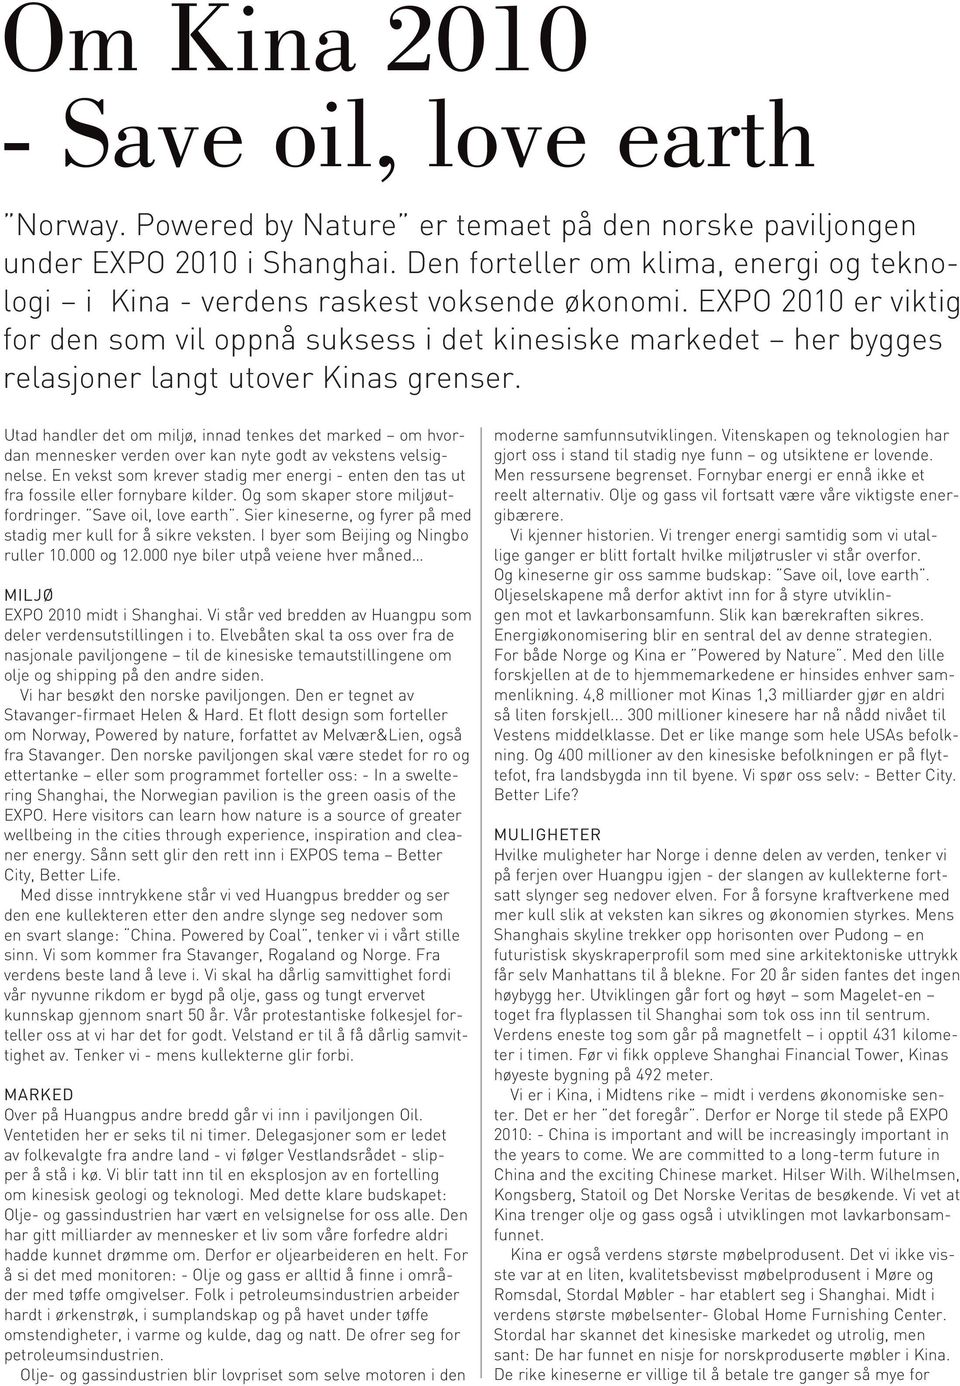 EXPO 2010 er viktig for den som vil oppnå suksess i det kinesiske markedet her bygges relasjoner langt utover Kinas grenser.